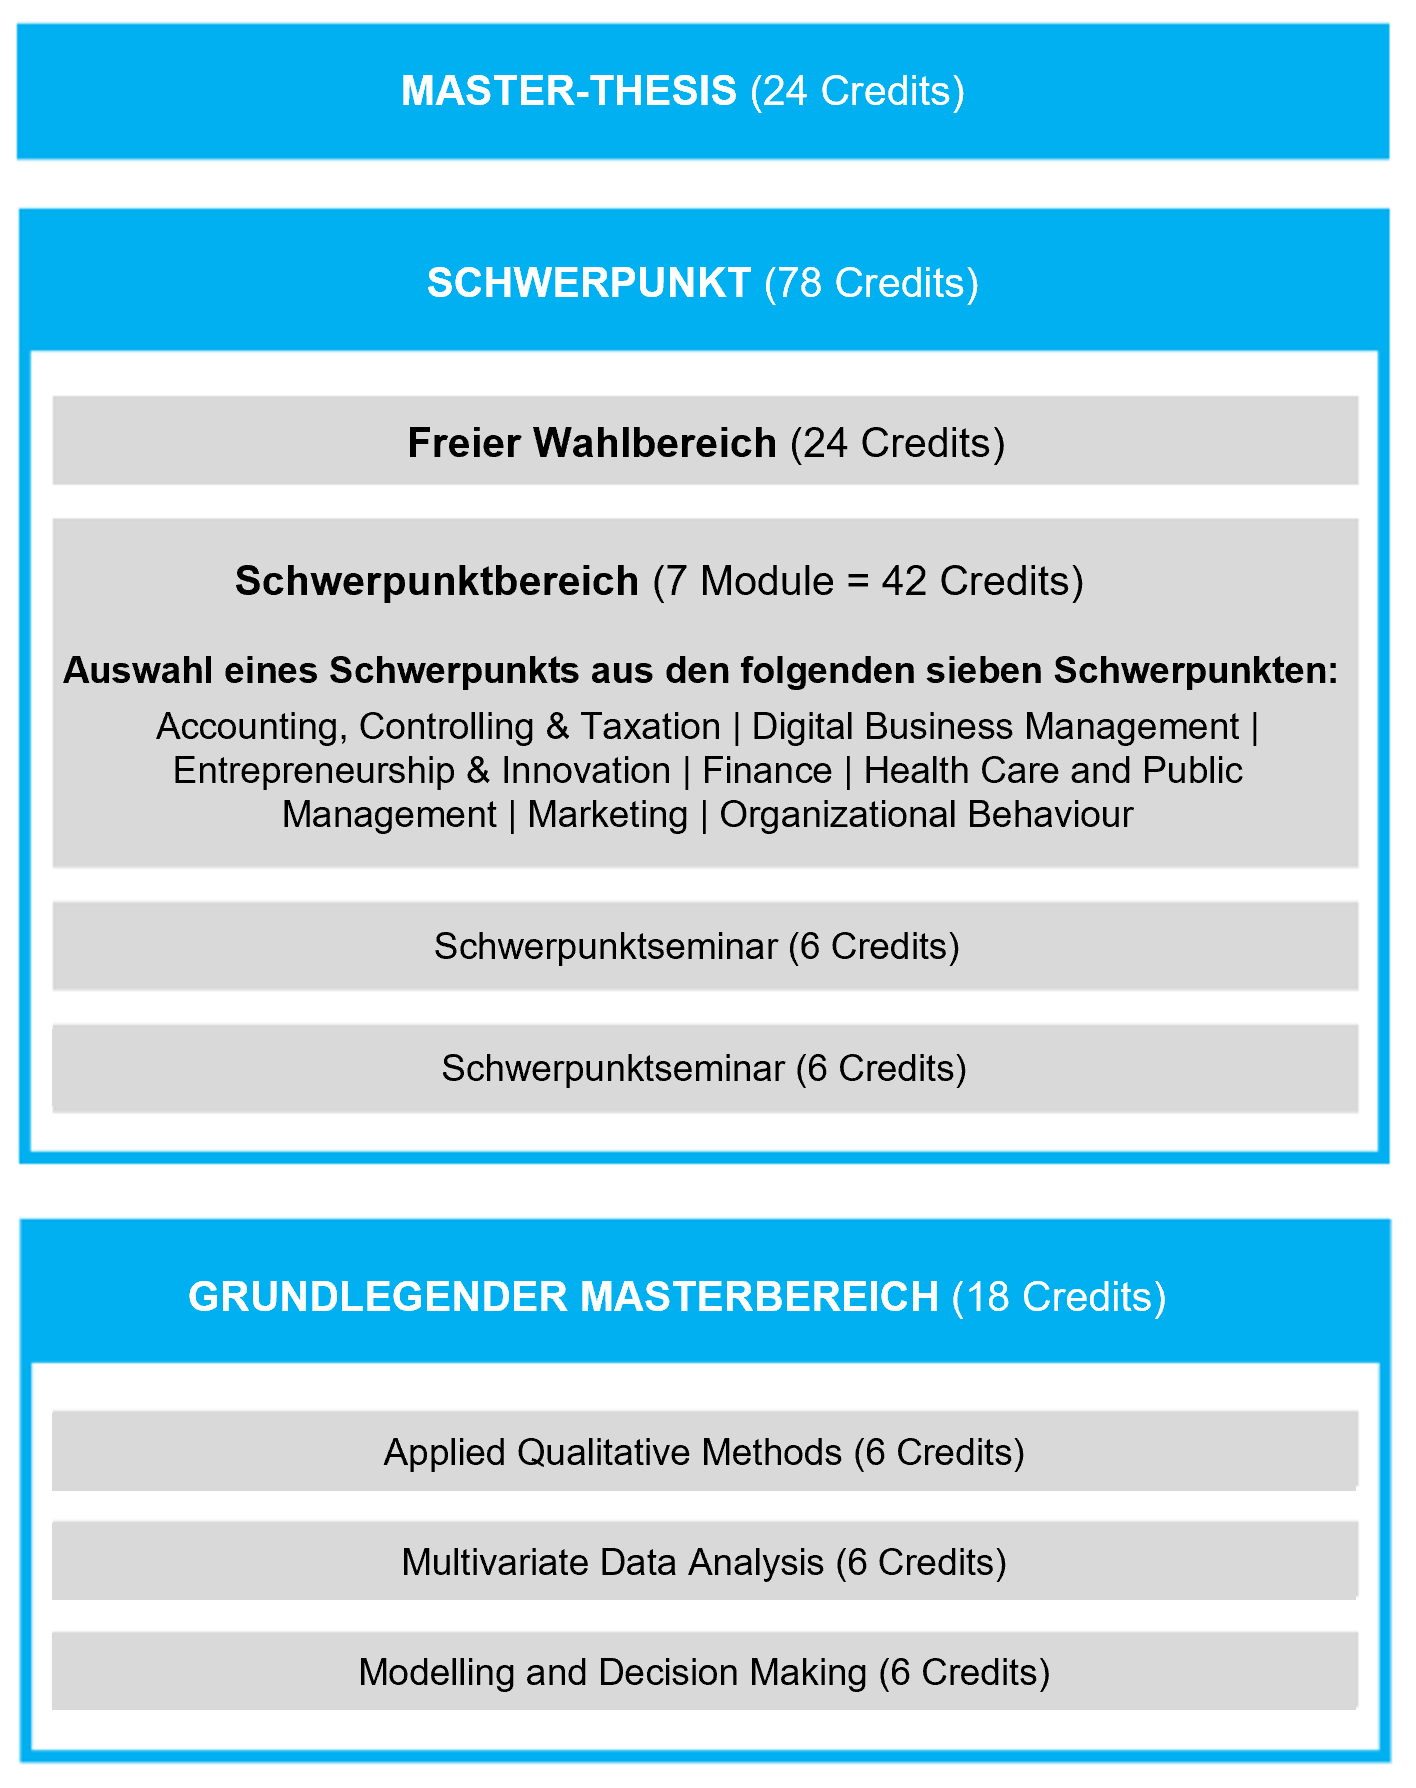 https://www.uni-hohenheim.de/fileadmin/einrichtungen/marketing1/Lehre/Studienplaene/Studienaufbauplan.png